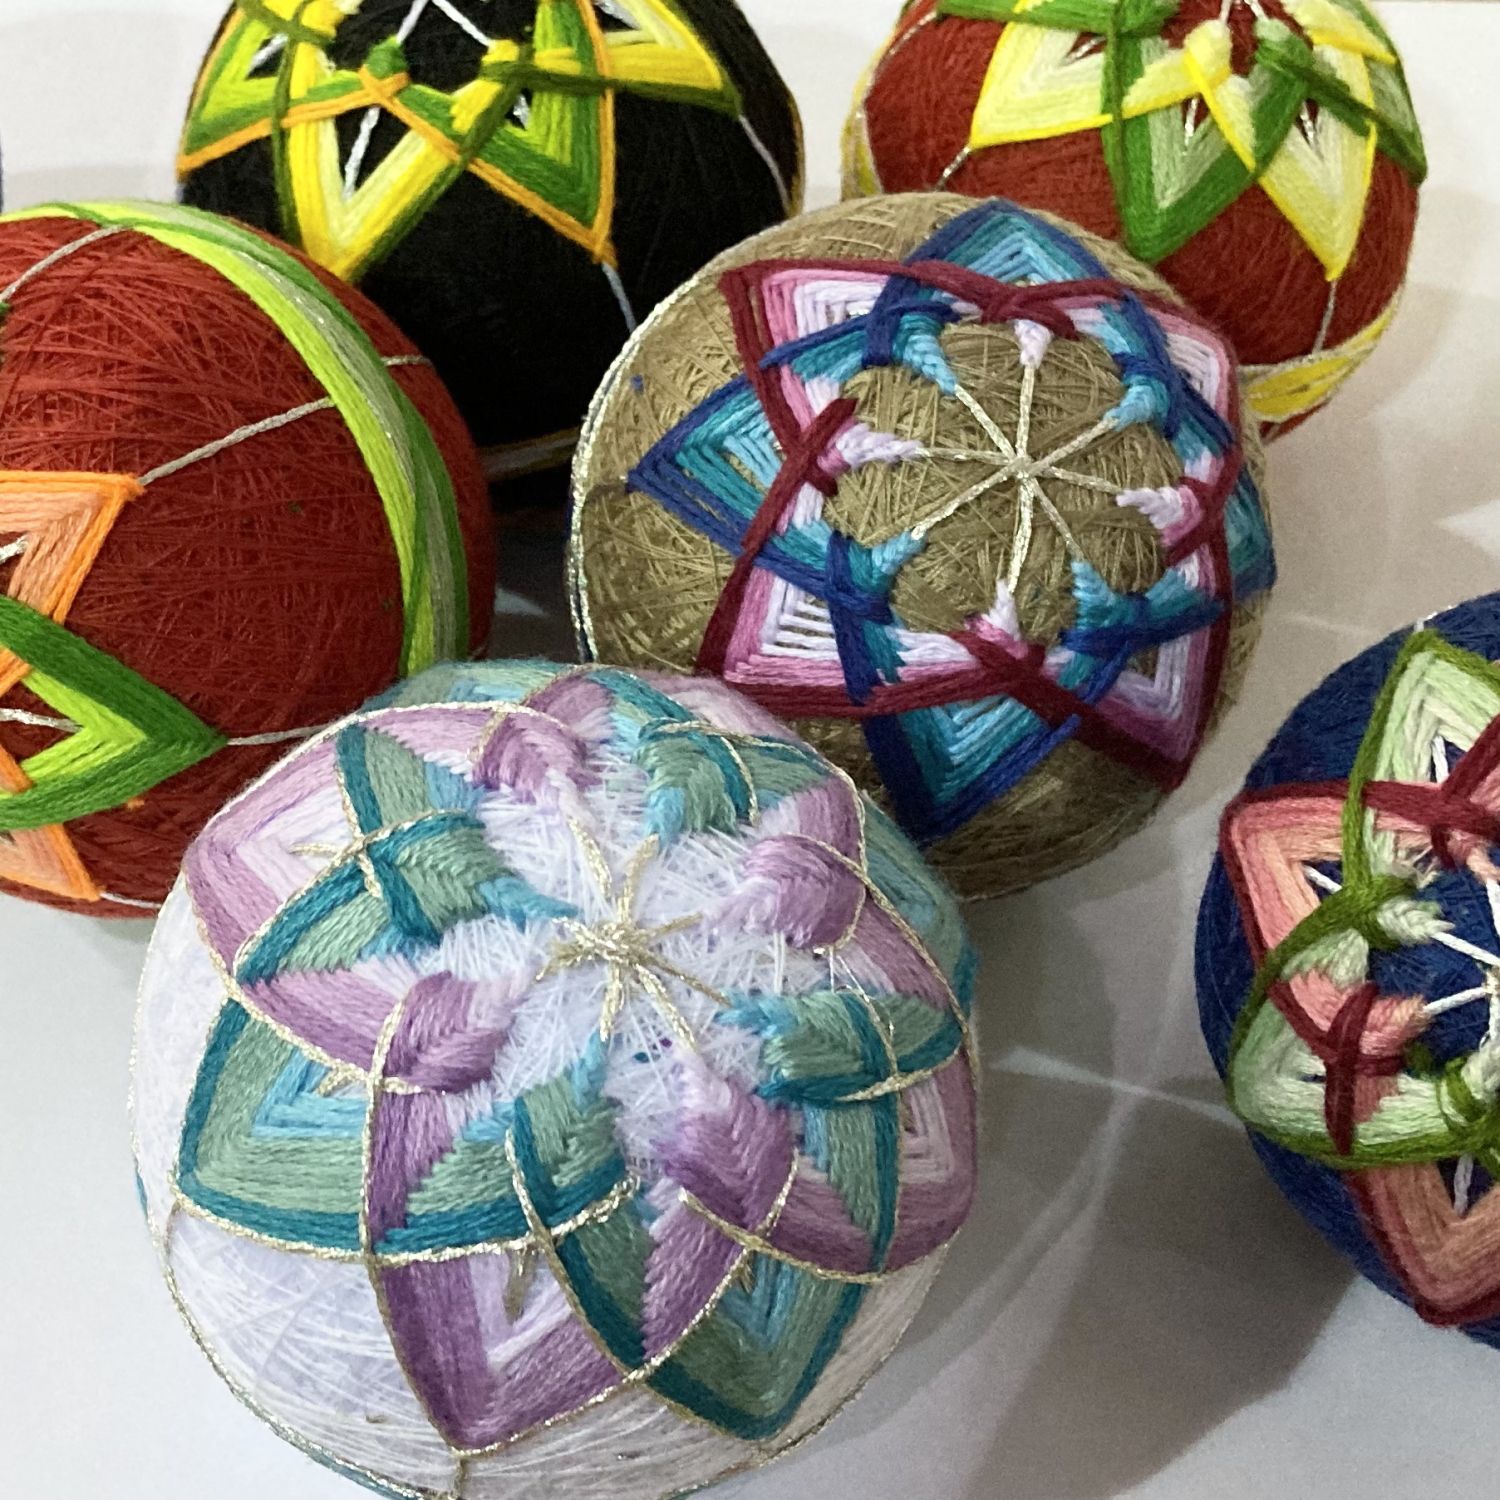 Tamari Ball Making Workshop - Temari Decorations